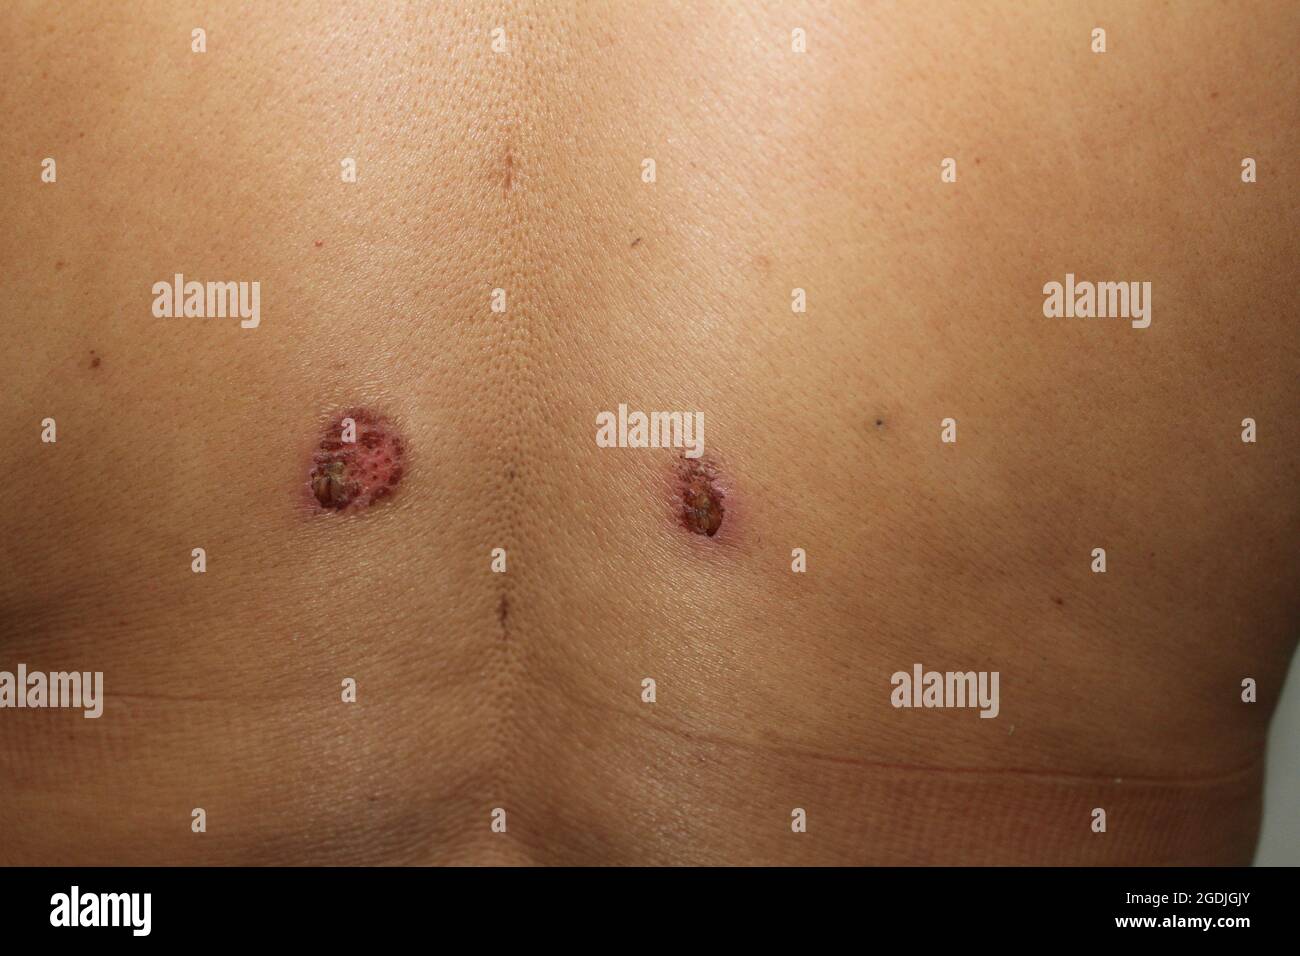 Dos orificios en la parte superior de la espalda de una mujer que muestran los puntos de entrada de liposucción o lipopo realizados durante el procedimiento de cirugía estética Foto de stock